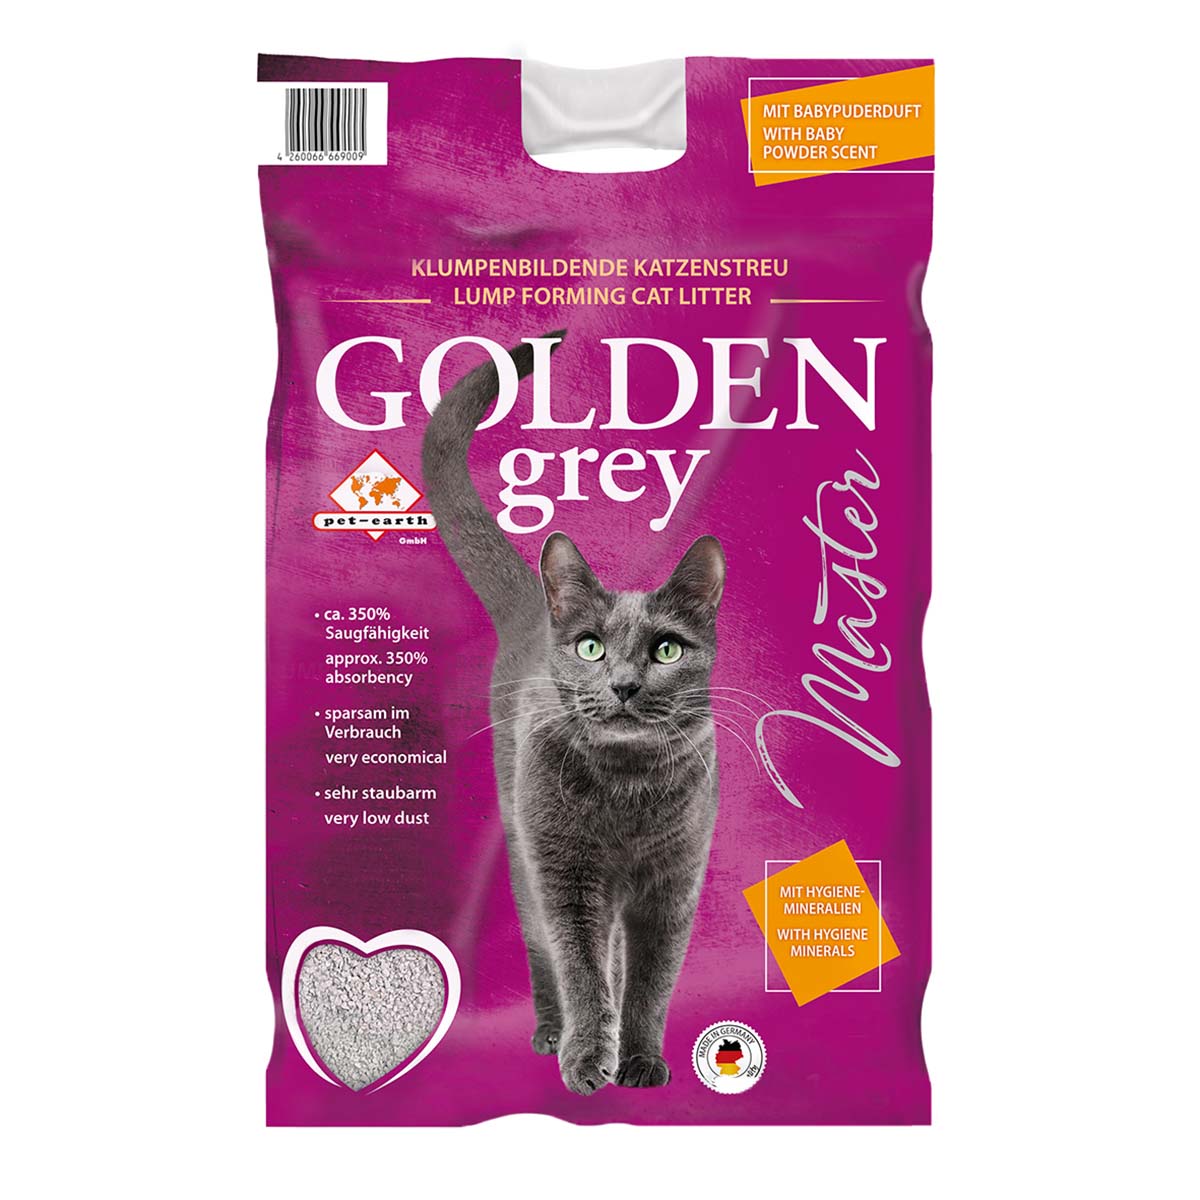 Golden Grey Master Katzenstreu mit Babypuderduft 14kg von Pet-Earth